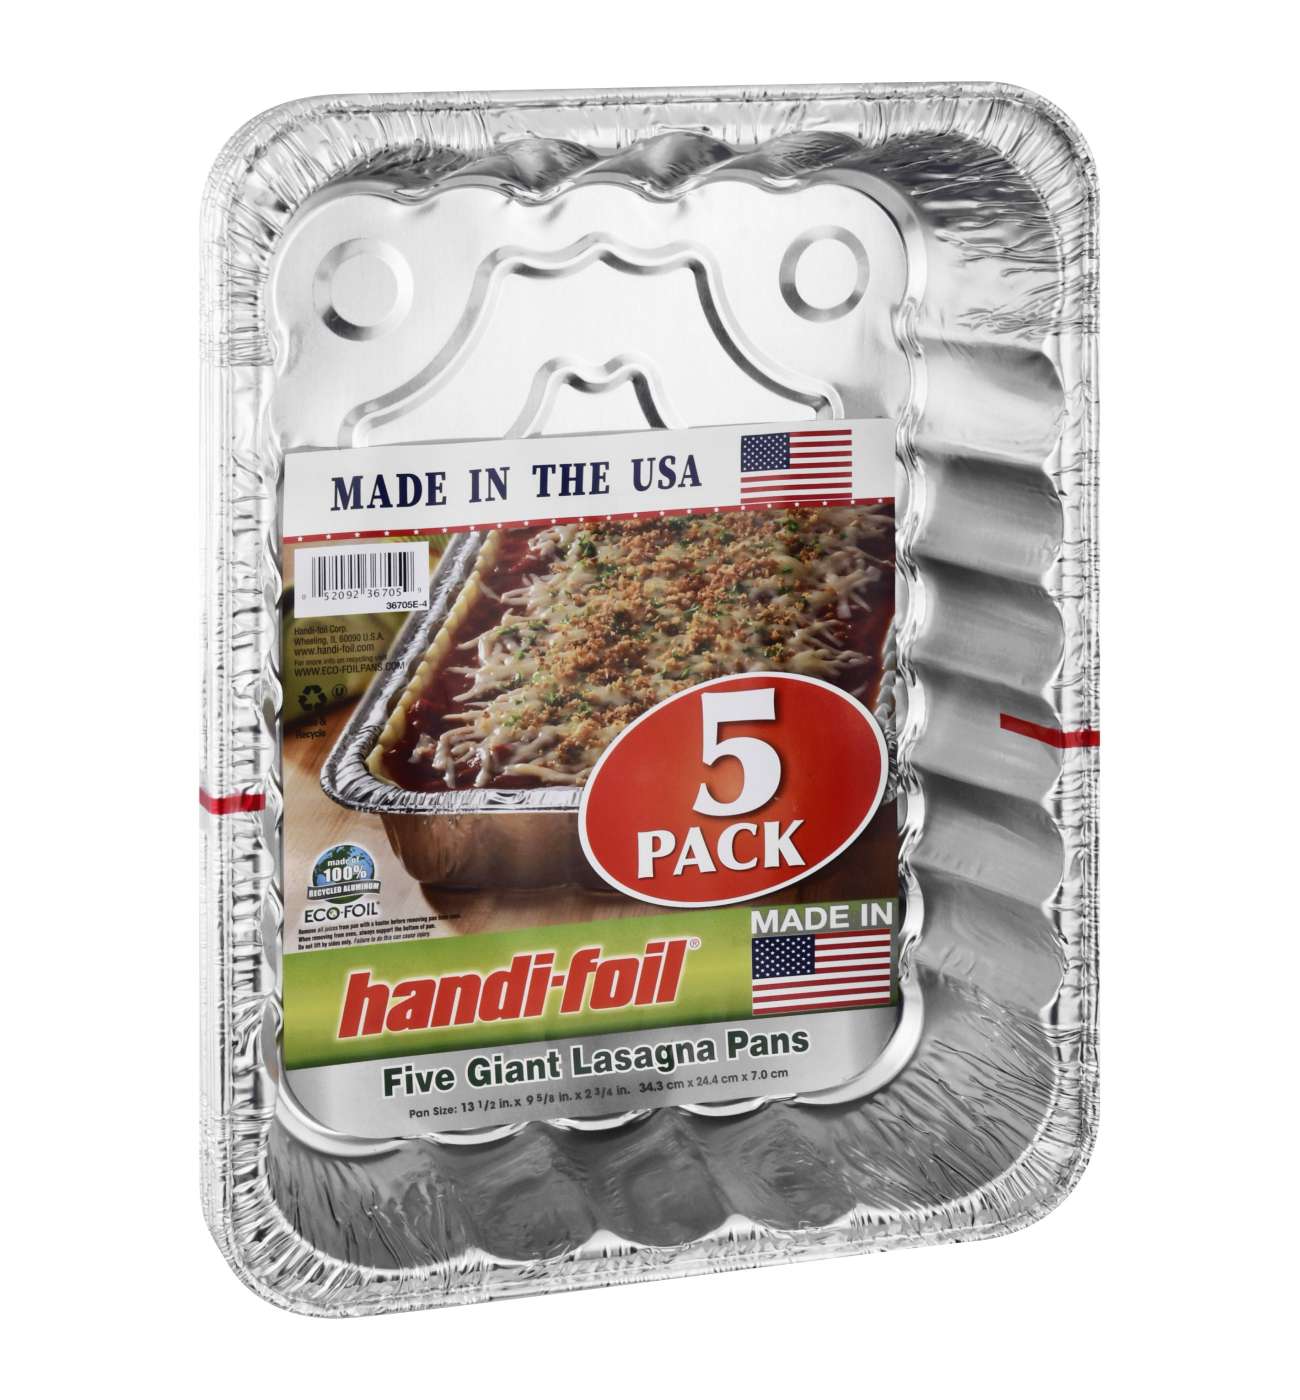 Handi-foil® Eco-Foil Giant Lasagna Pans, 5 pk / 13.5 x 9.6 in